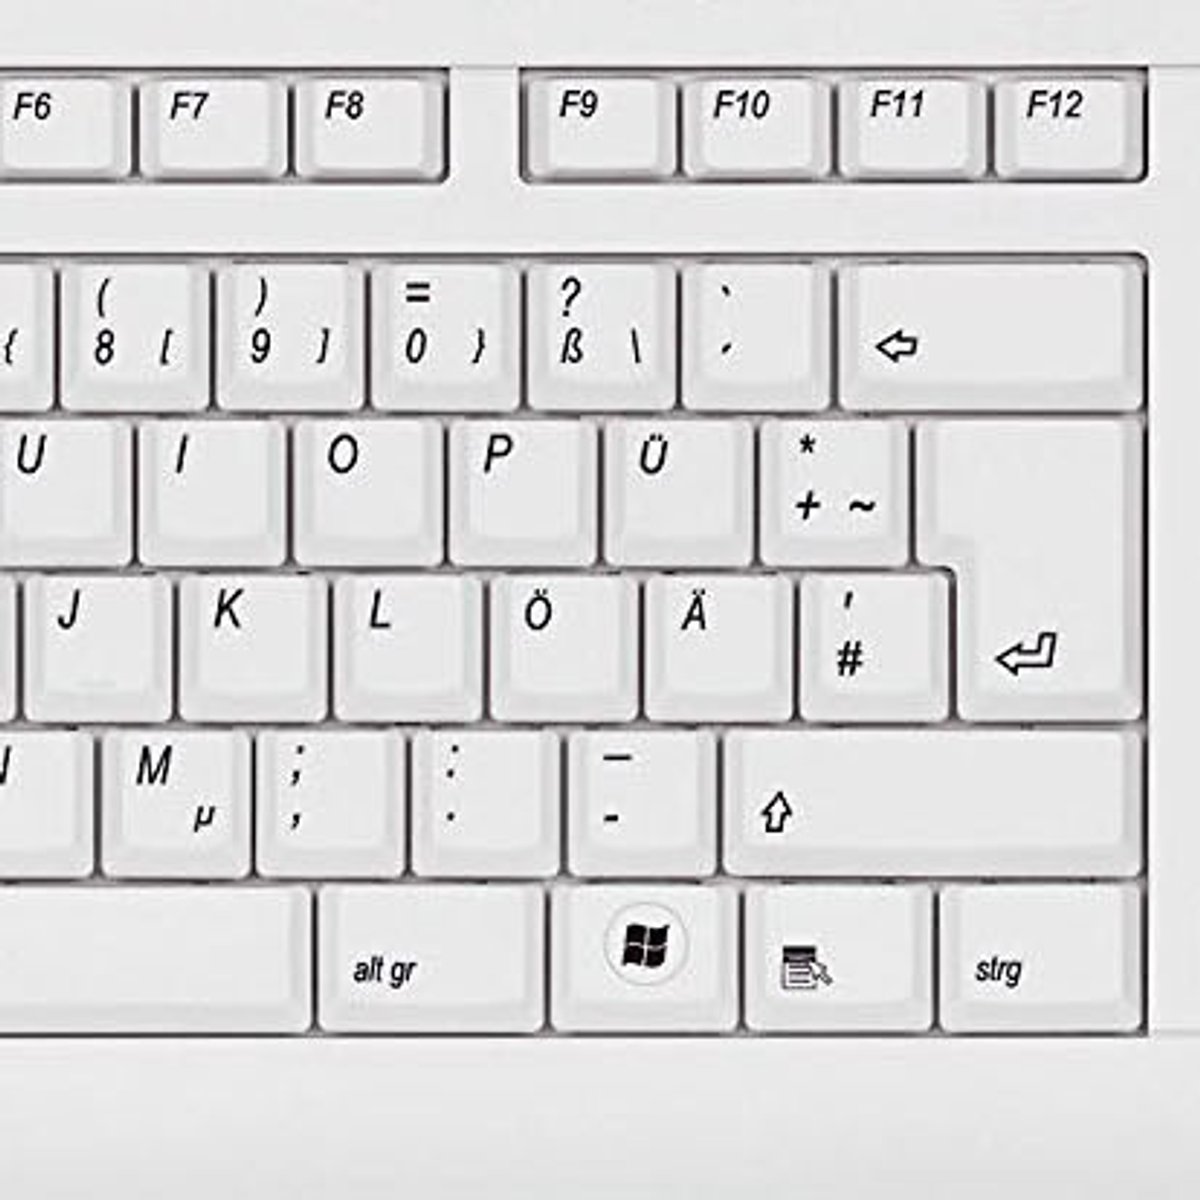 beundre køleskab skud Home-Key“ – Wo finde ich ihn auf der Tastatur?